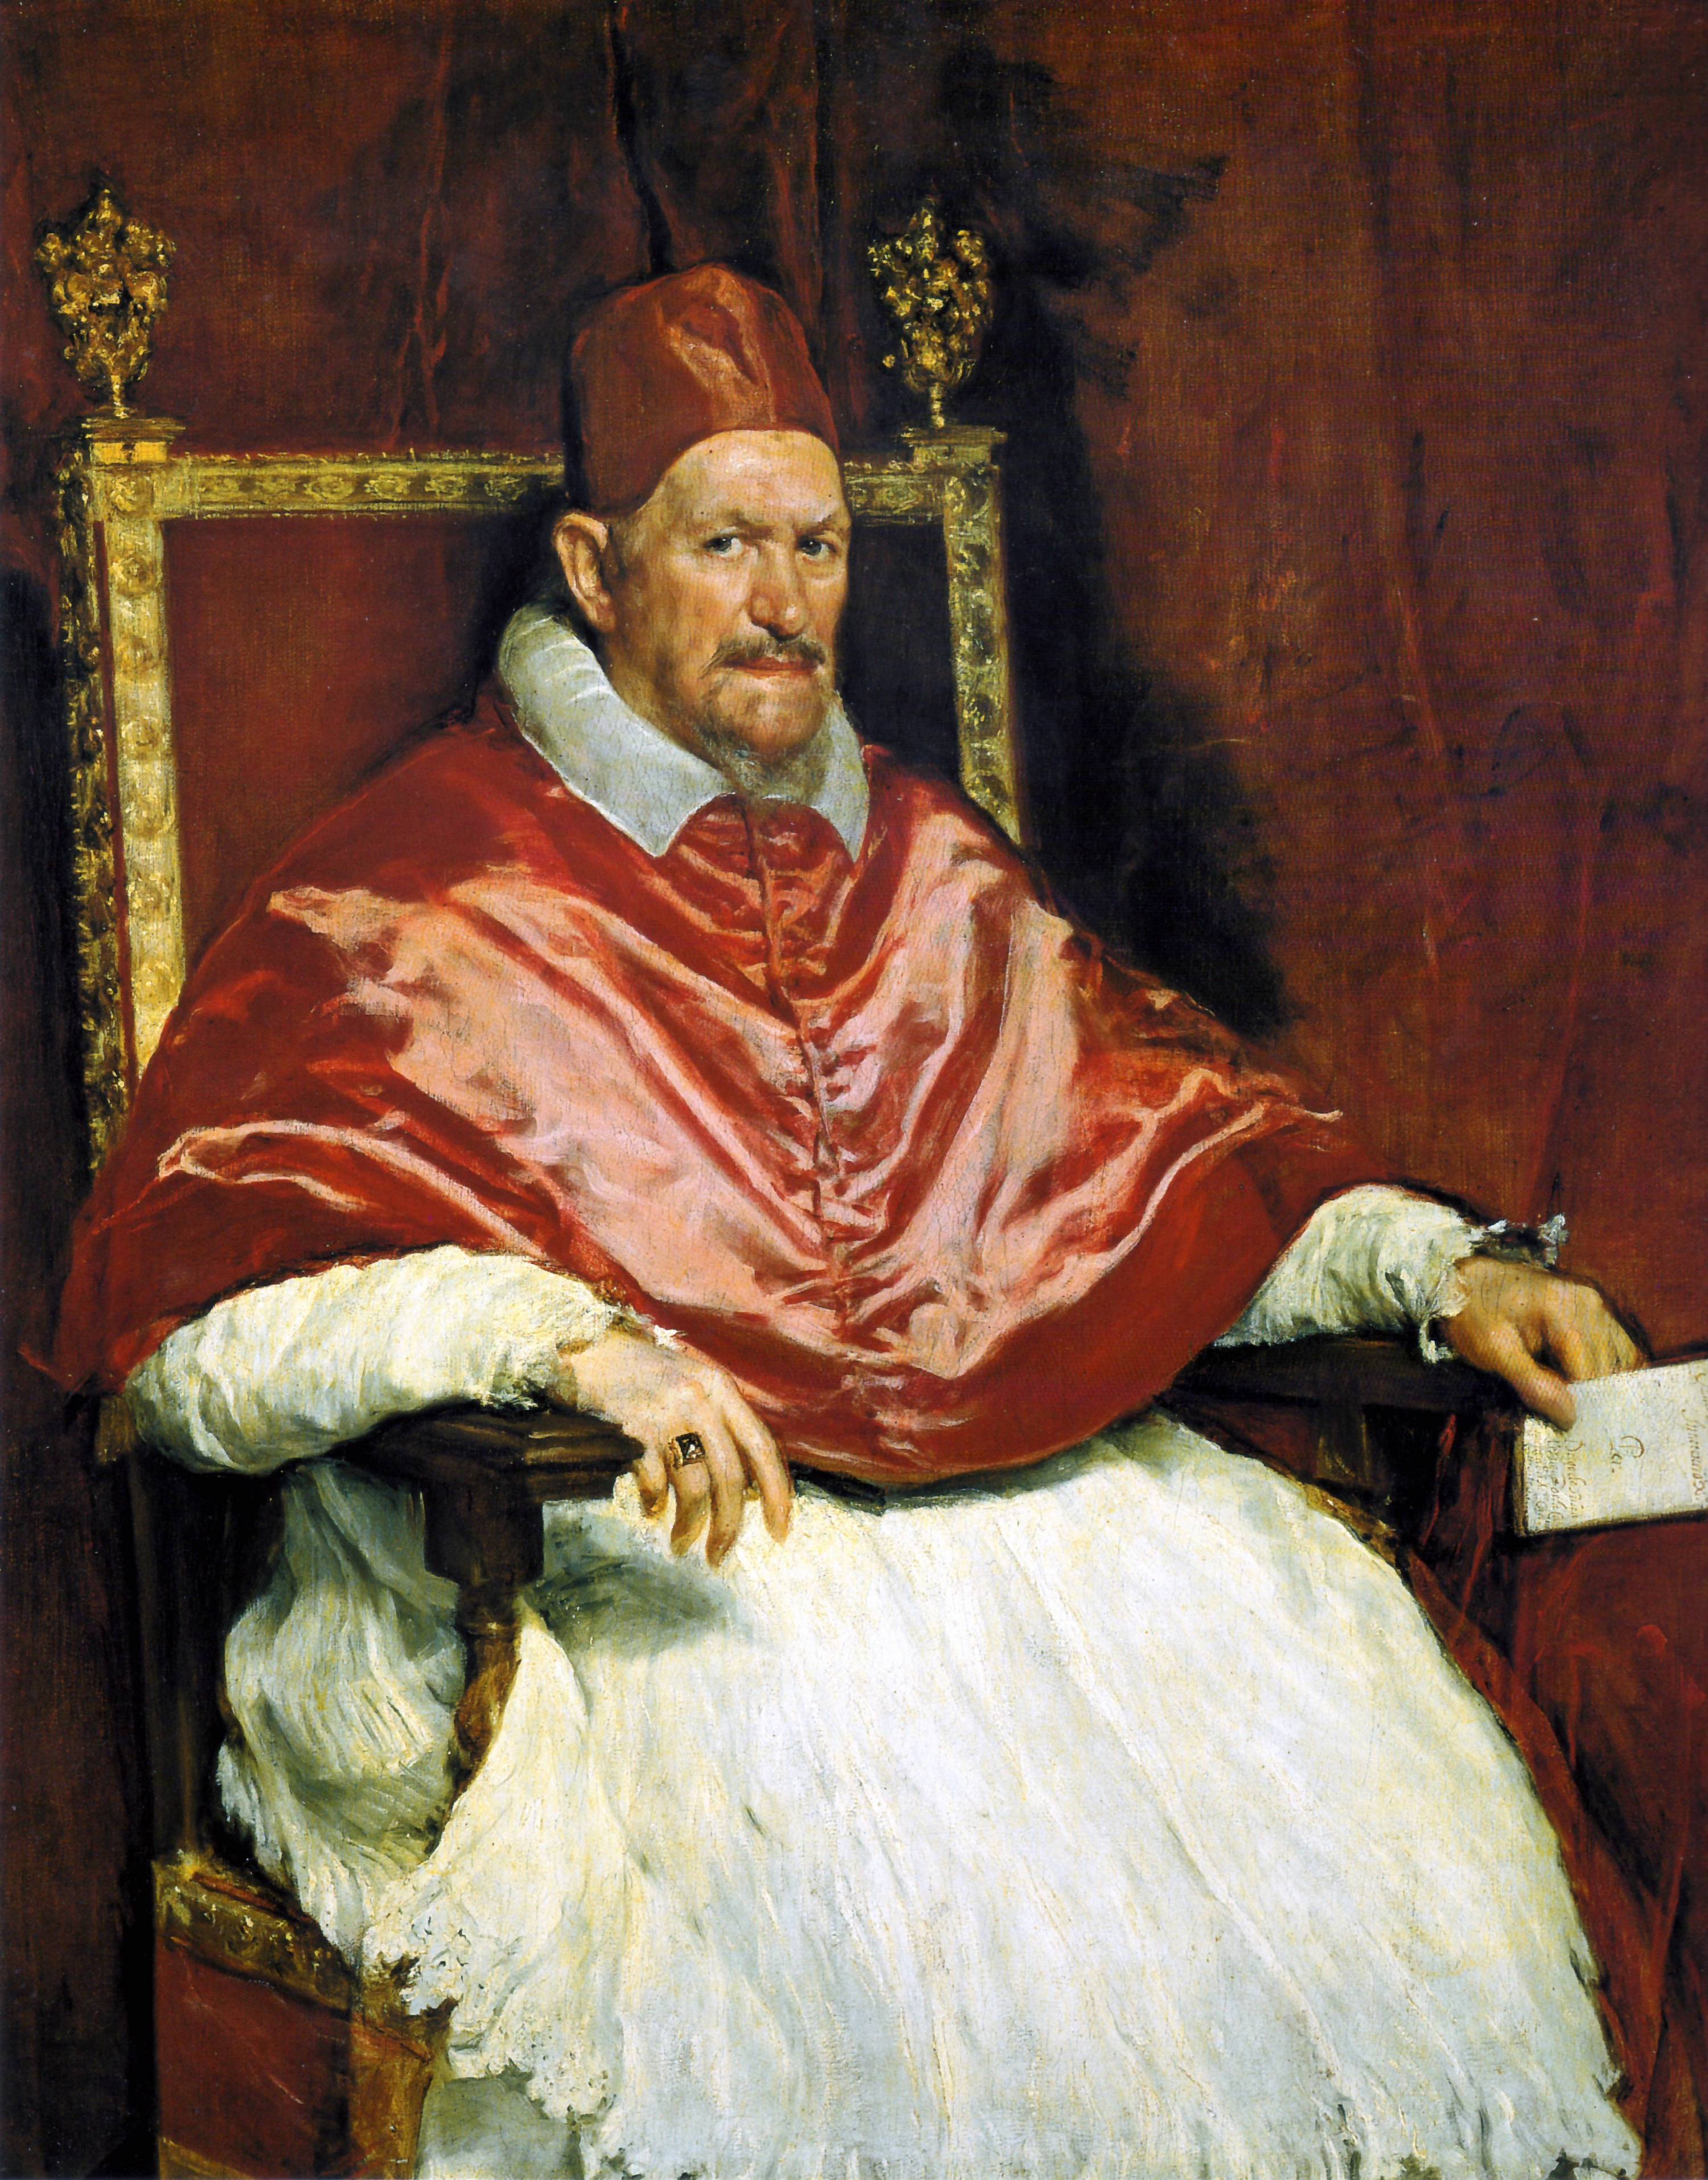 Portrait du Pape Innocent X by Diego Velázquez - ca. 1650 Galleria Doria Pamphilj